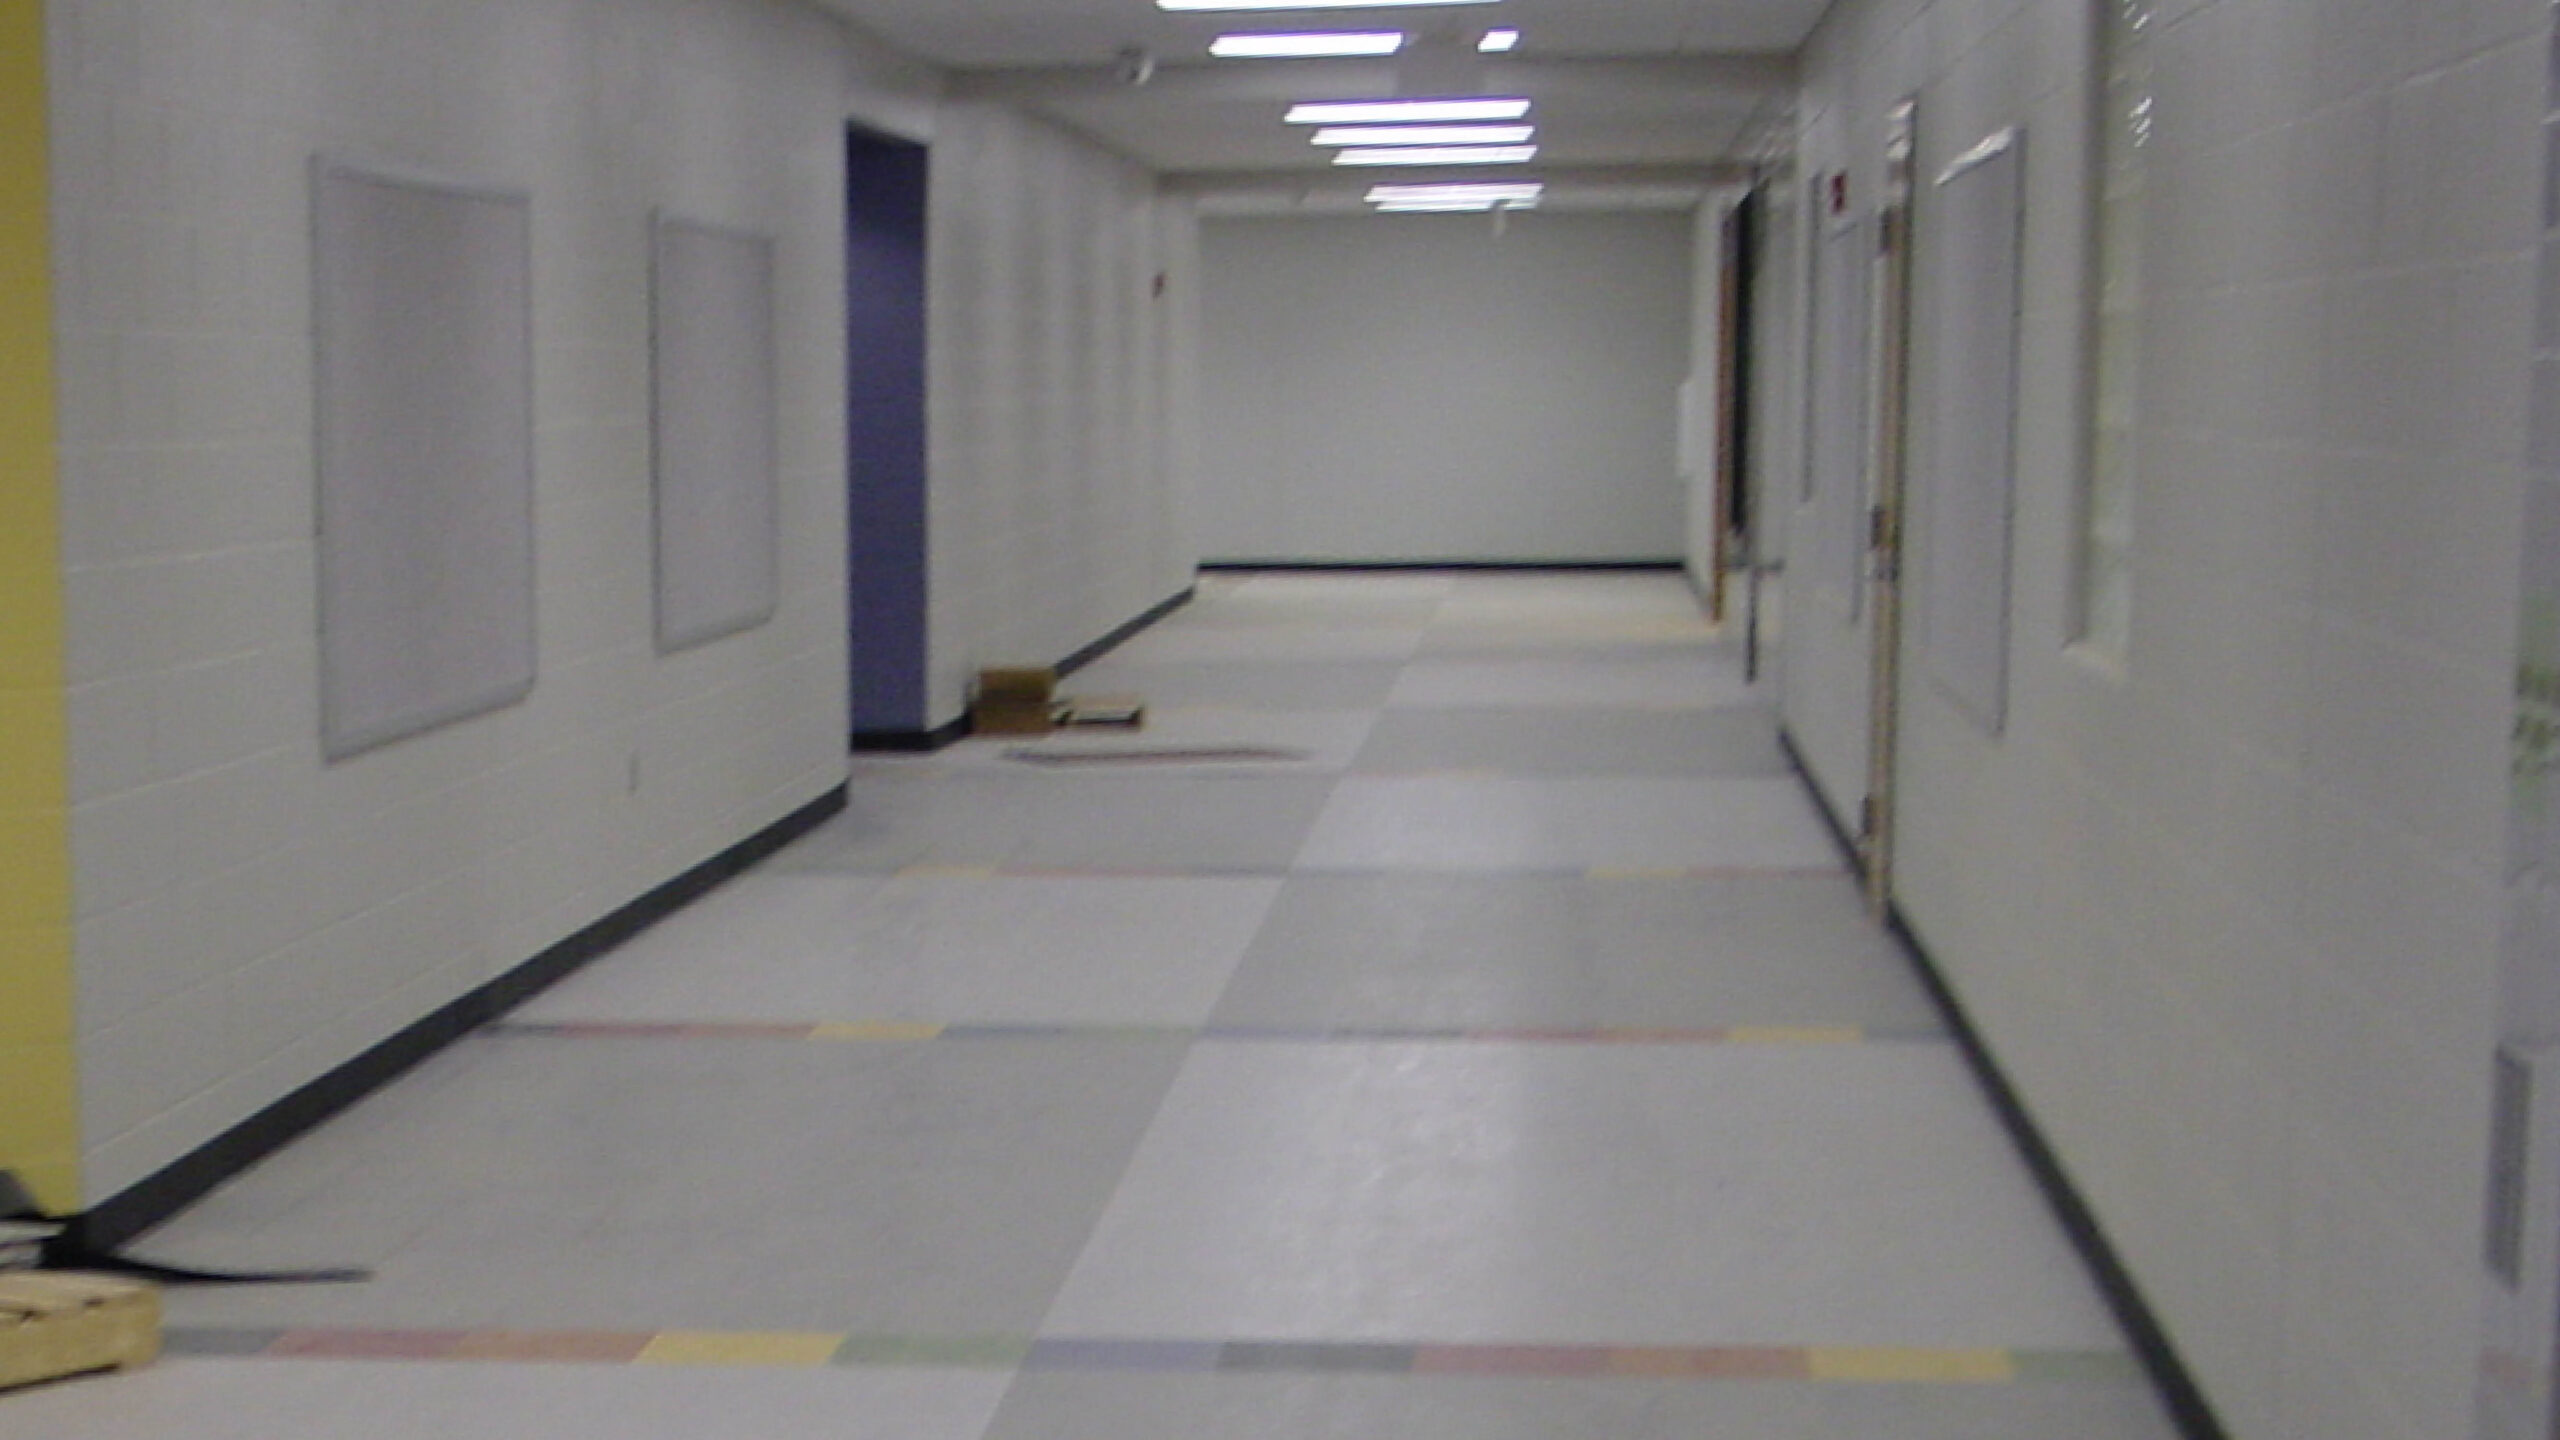 hallway with tile floor